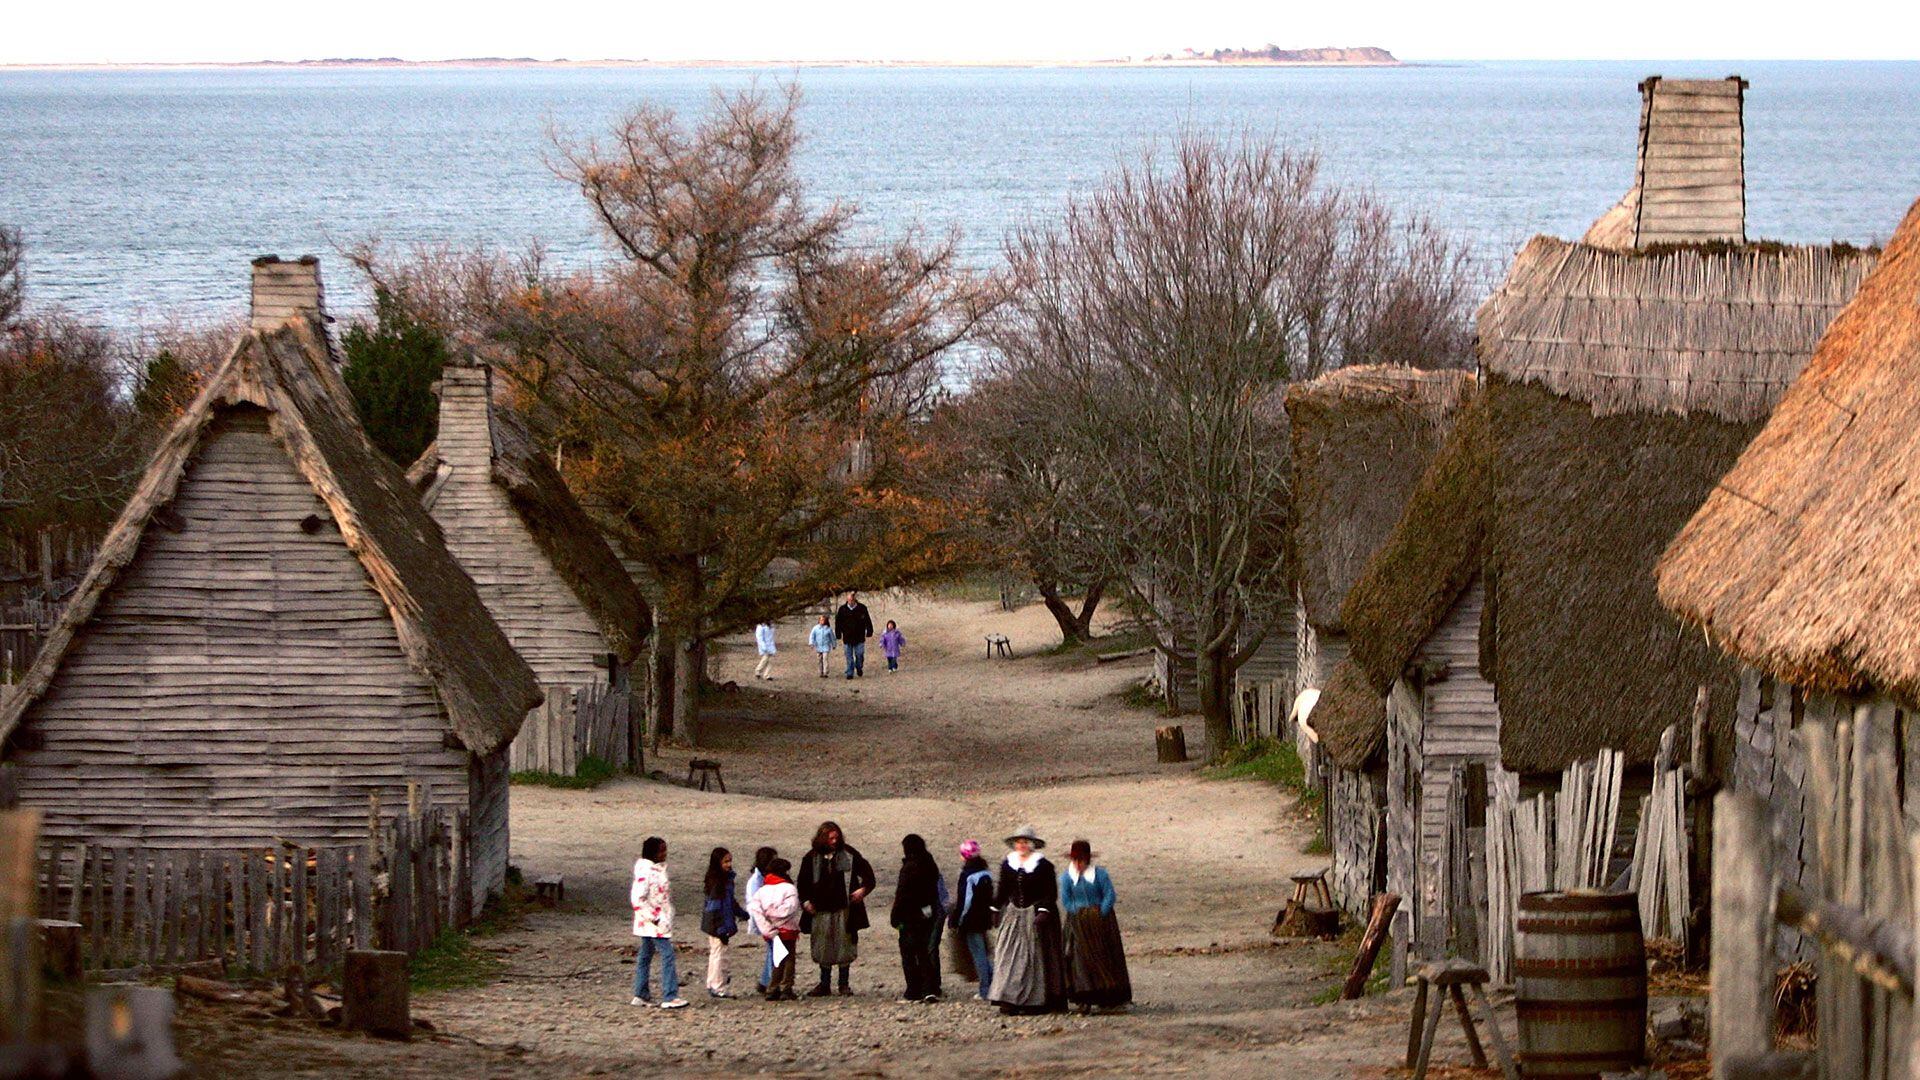 La aldea que recrea en Plymouth a la que construyeron los peregrinos llegados en el Mayflower. Es una atracción turística donde actores se visten como en el siglo XVII (Photo by Joe Raedle/Getty Images)